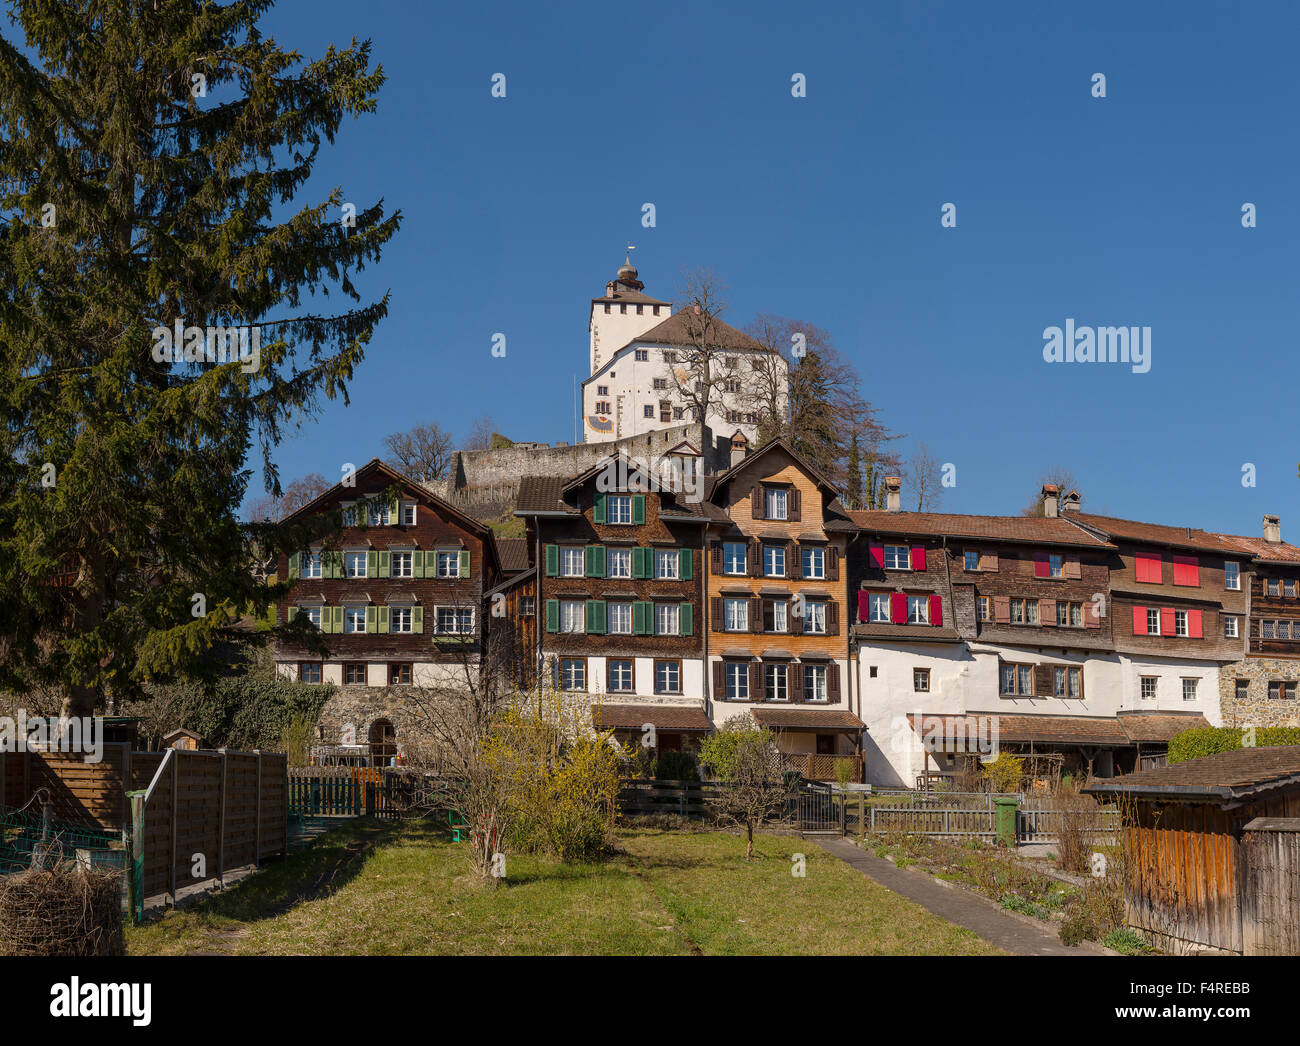 Switzerland, Europe, canton St. Gallen, village, forest, wood, trees, winter, Werdenberg, castle, Städli, Stock Photo